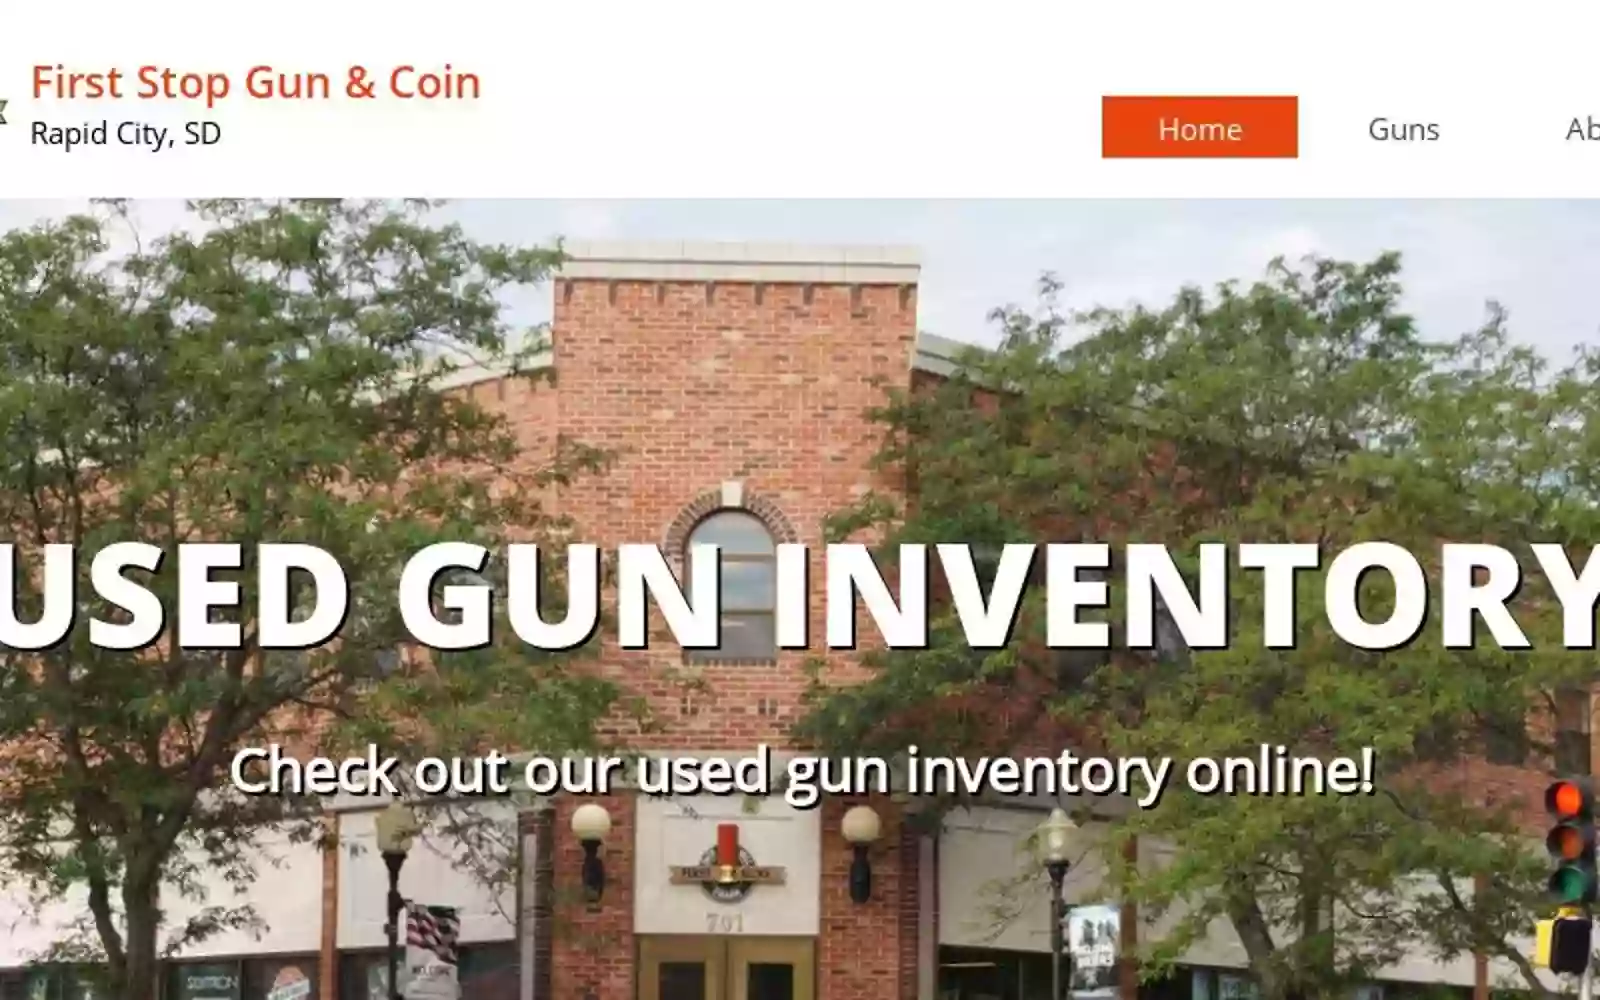 First Stop Gun & Coin